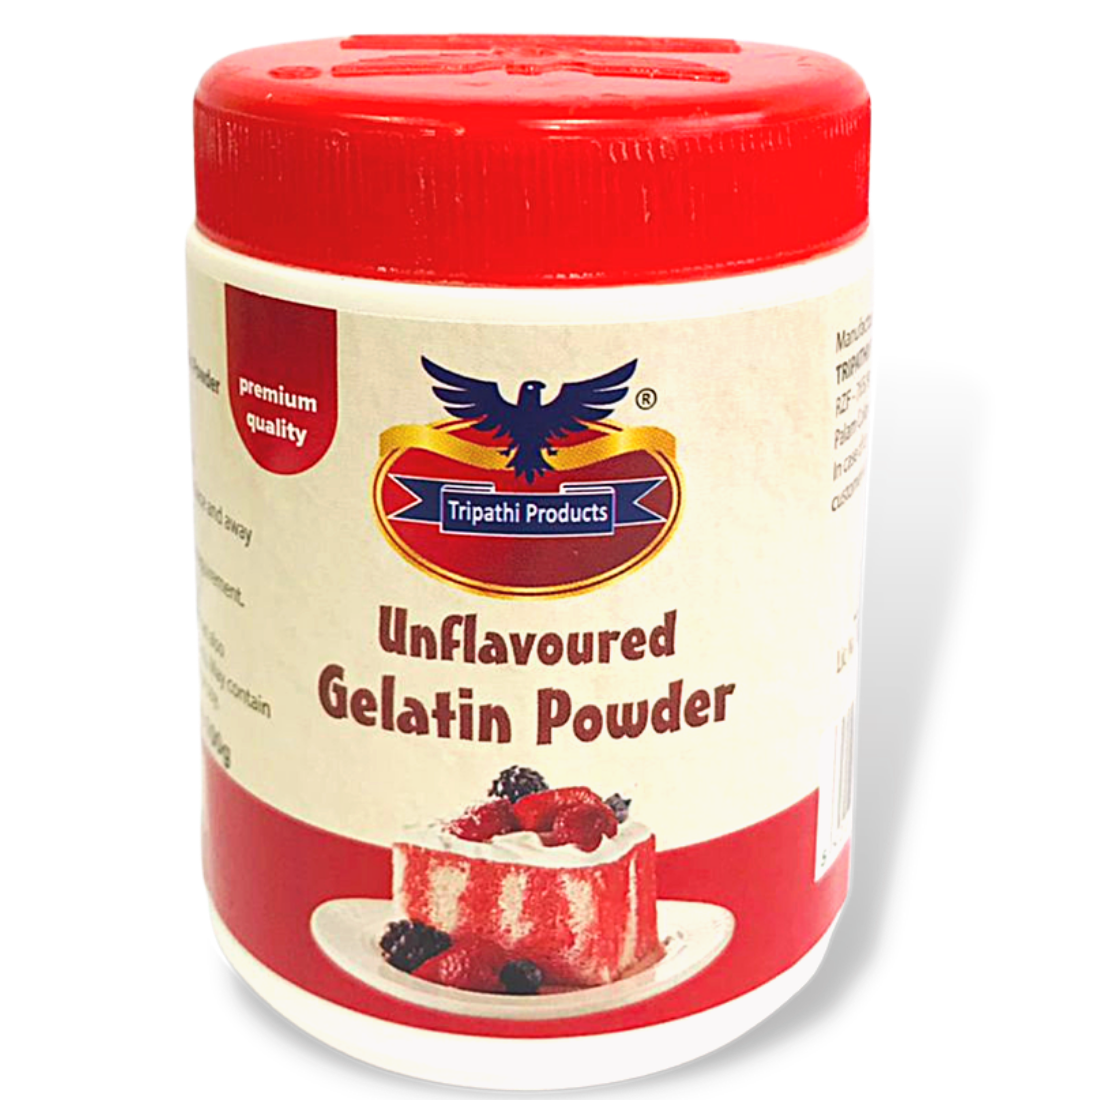 Unflavoured Gelatin Powder